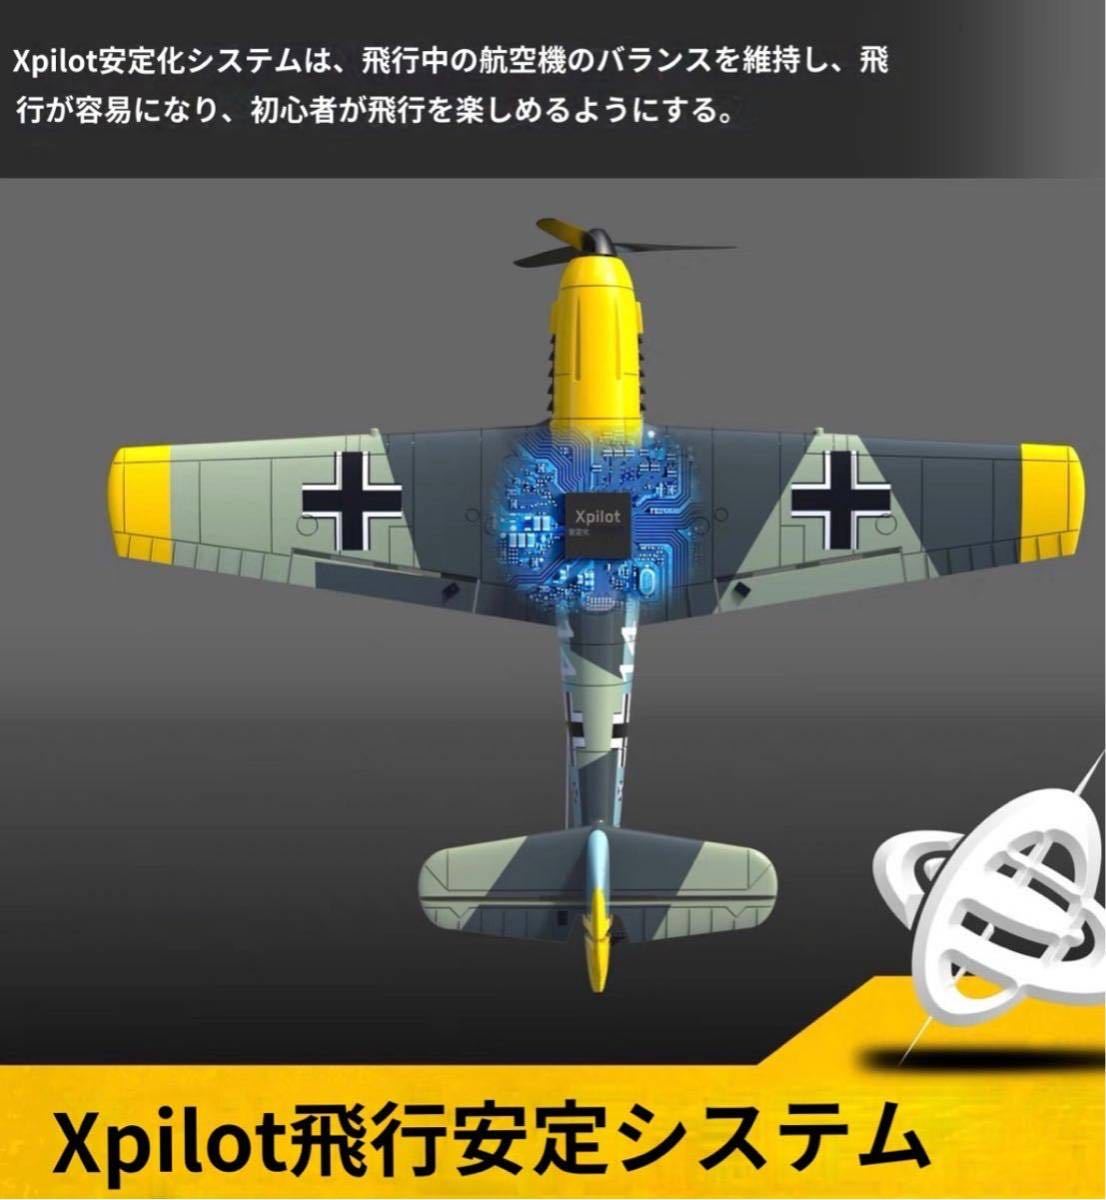 新登場 バッテリー3本 組立不要 Volantex EACHINE BF109 戦闘機 4CH 400mm オープンTX ジャイロ即飛行 100g以下規制外 RCラジコン飛行機